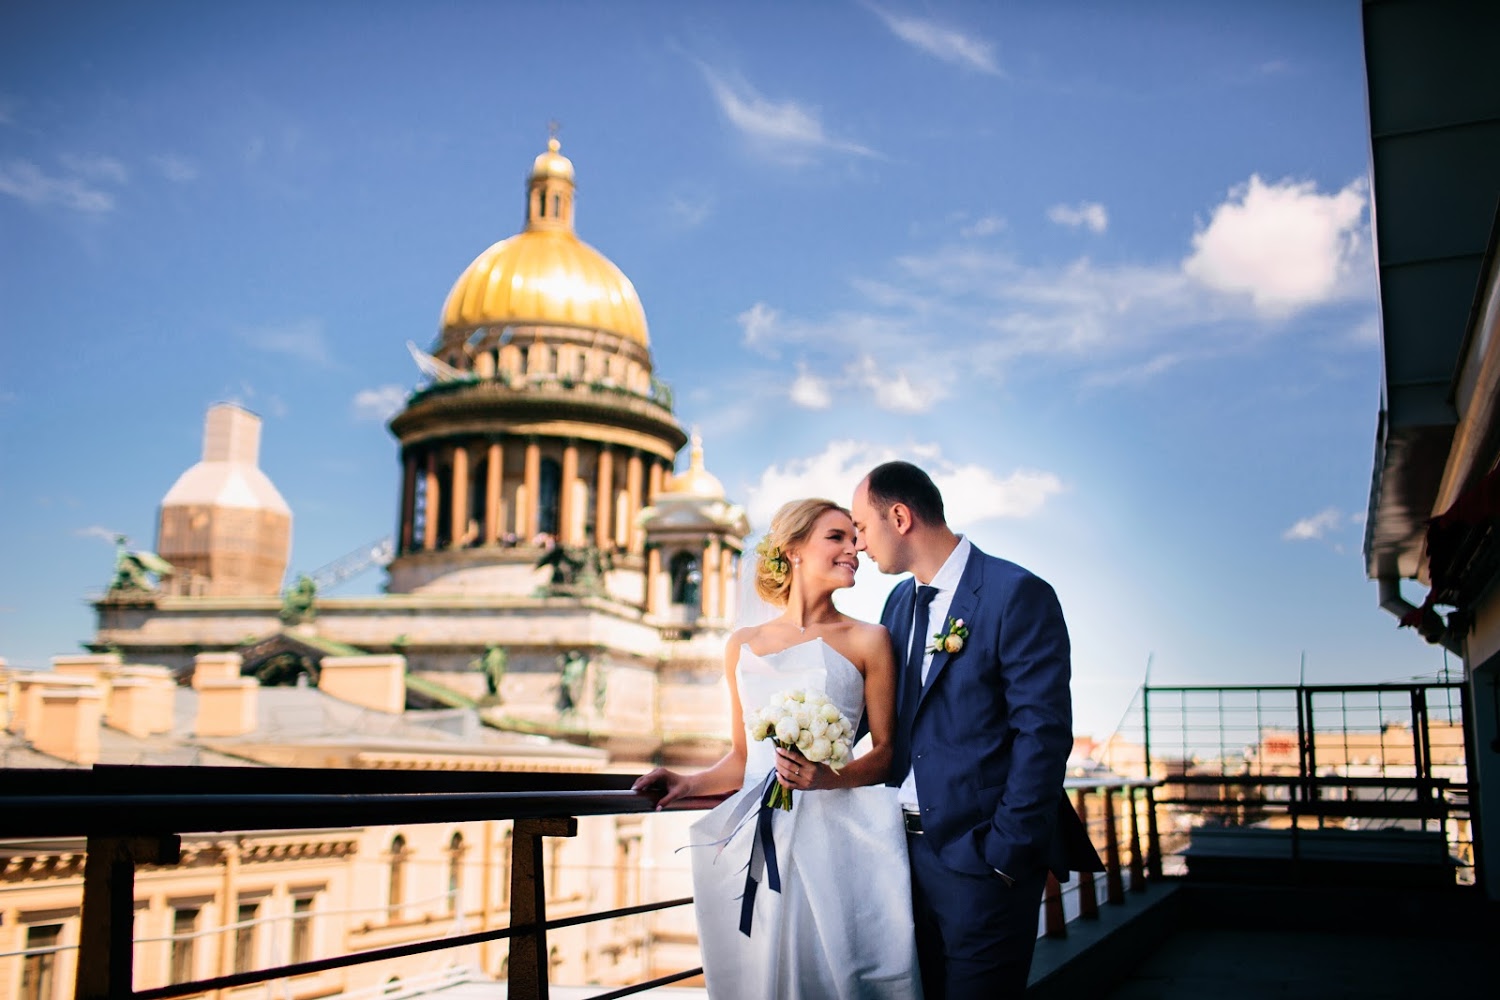 санкт петербург свадебные